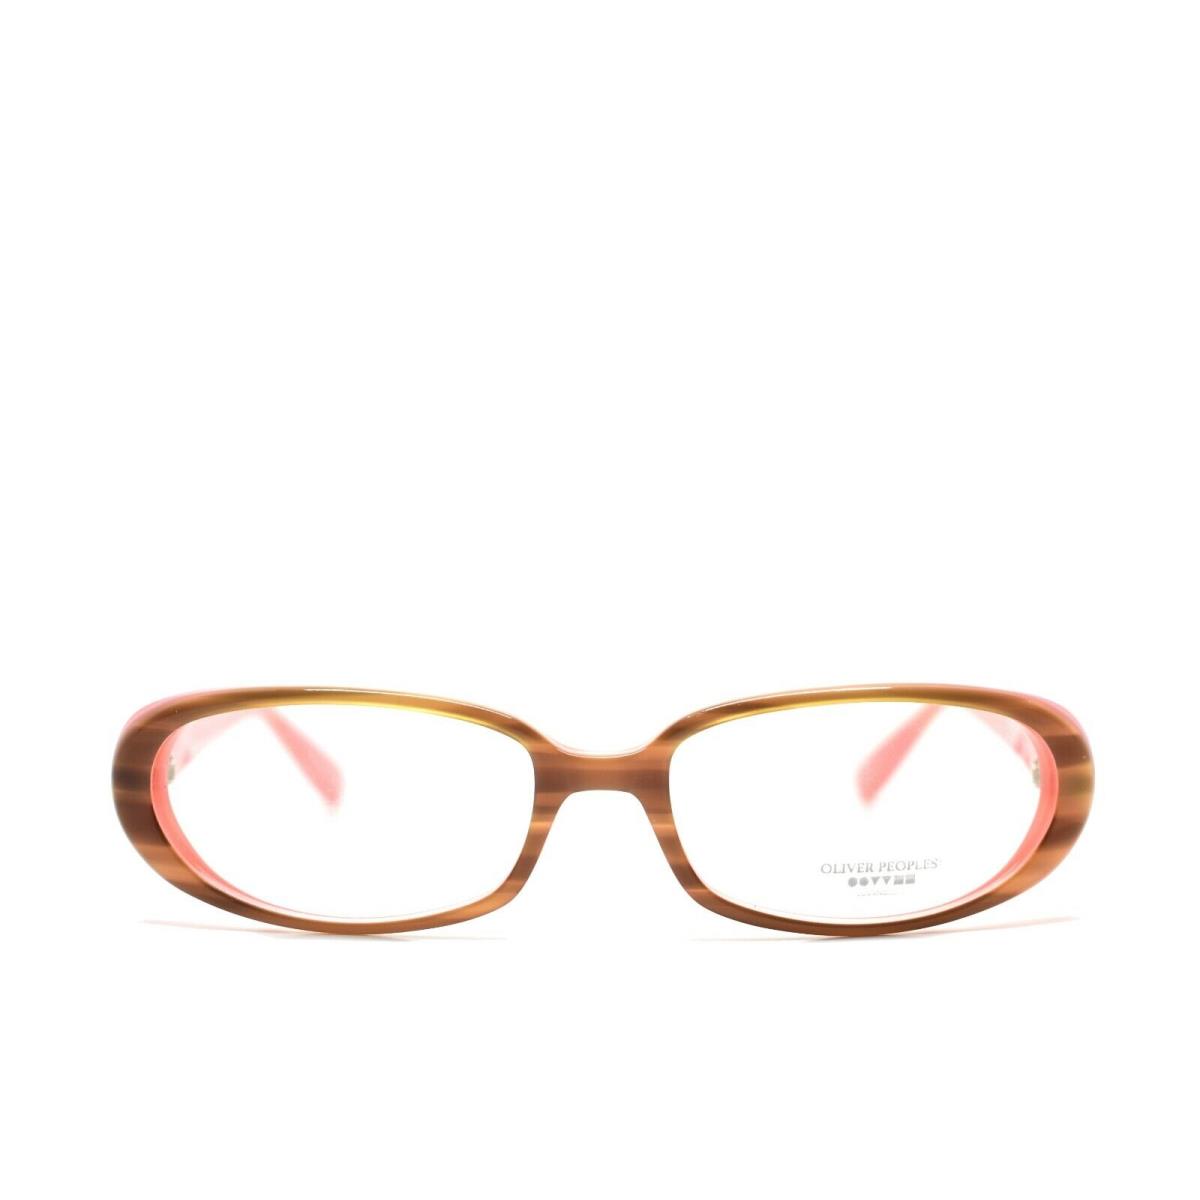 Oliver Peoples Eyeglasses Katy Otpi 51-16-135 | 827934368750 - Oliver ...